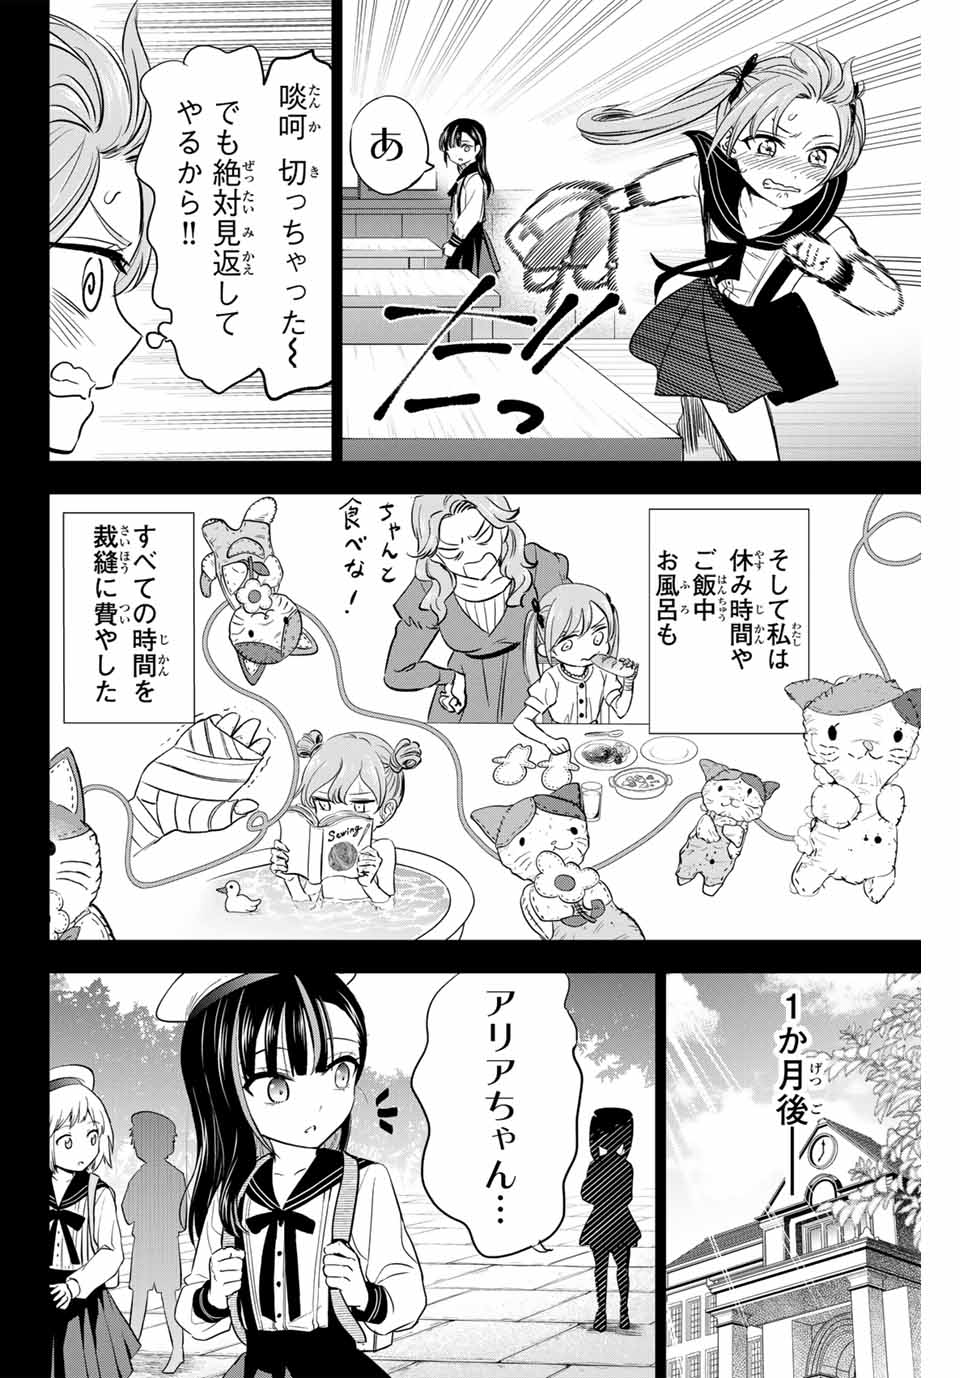 Kuroneko to Majo no Kyoushitsu - Chapter 54 - Page 16